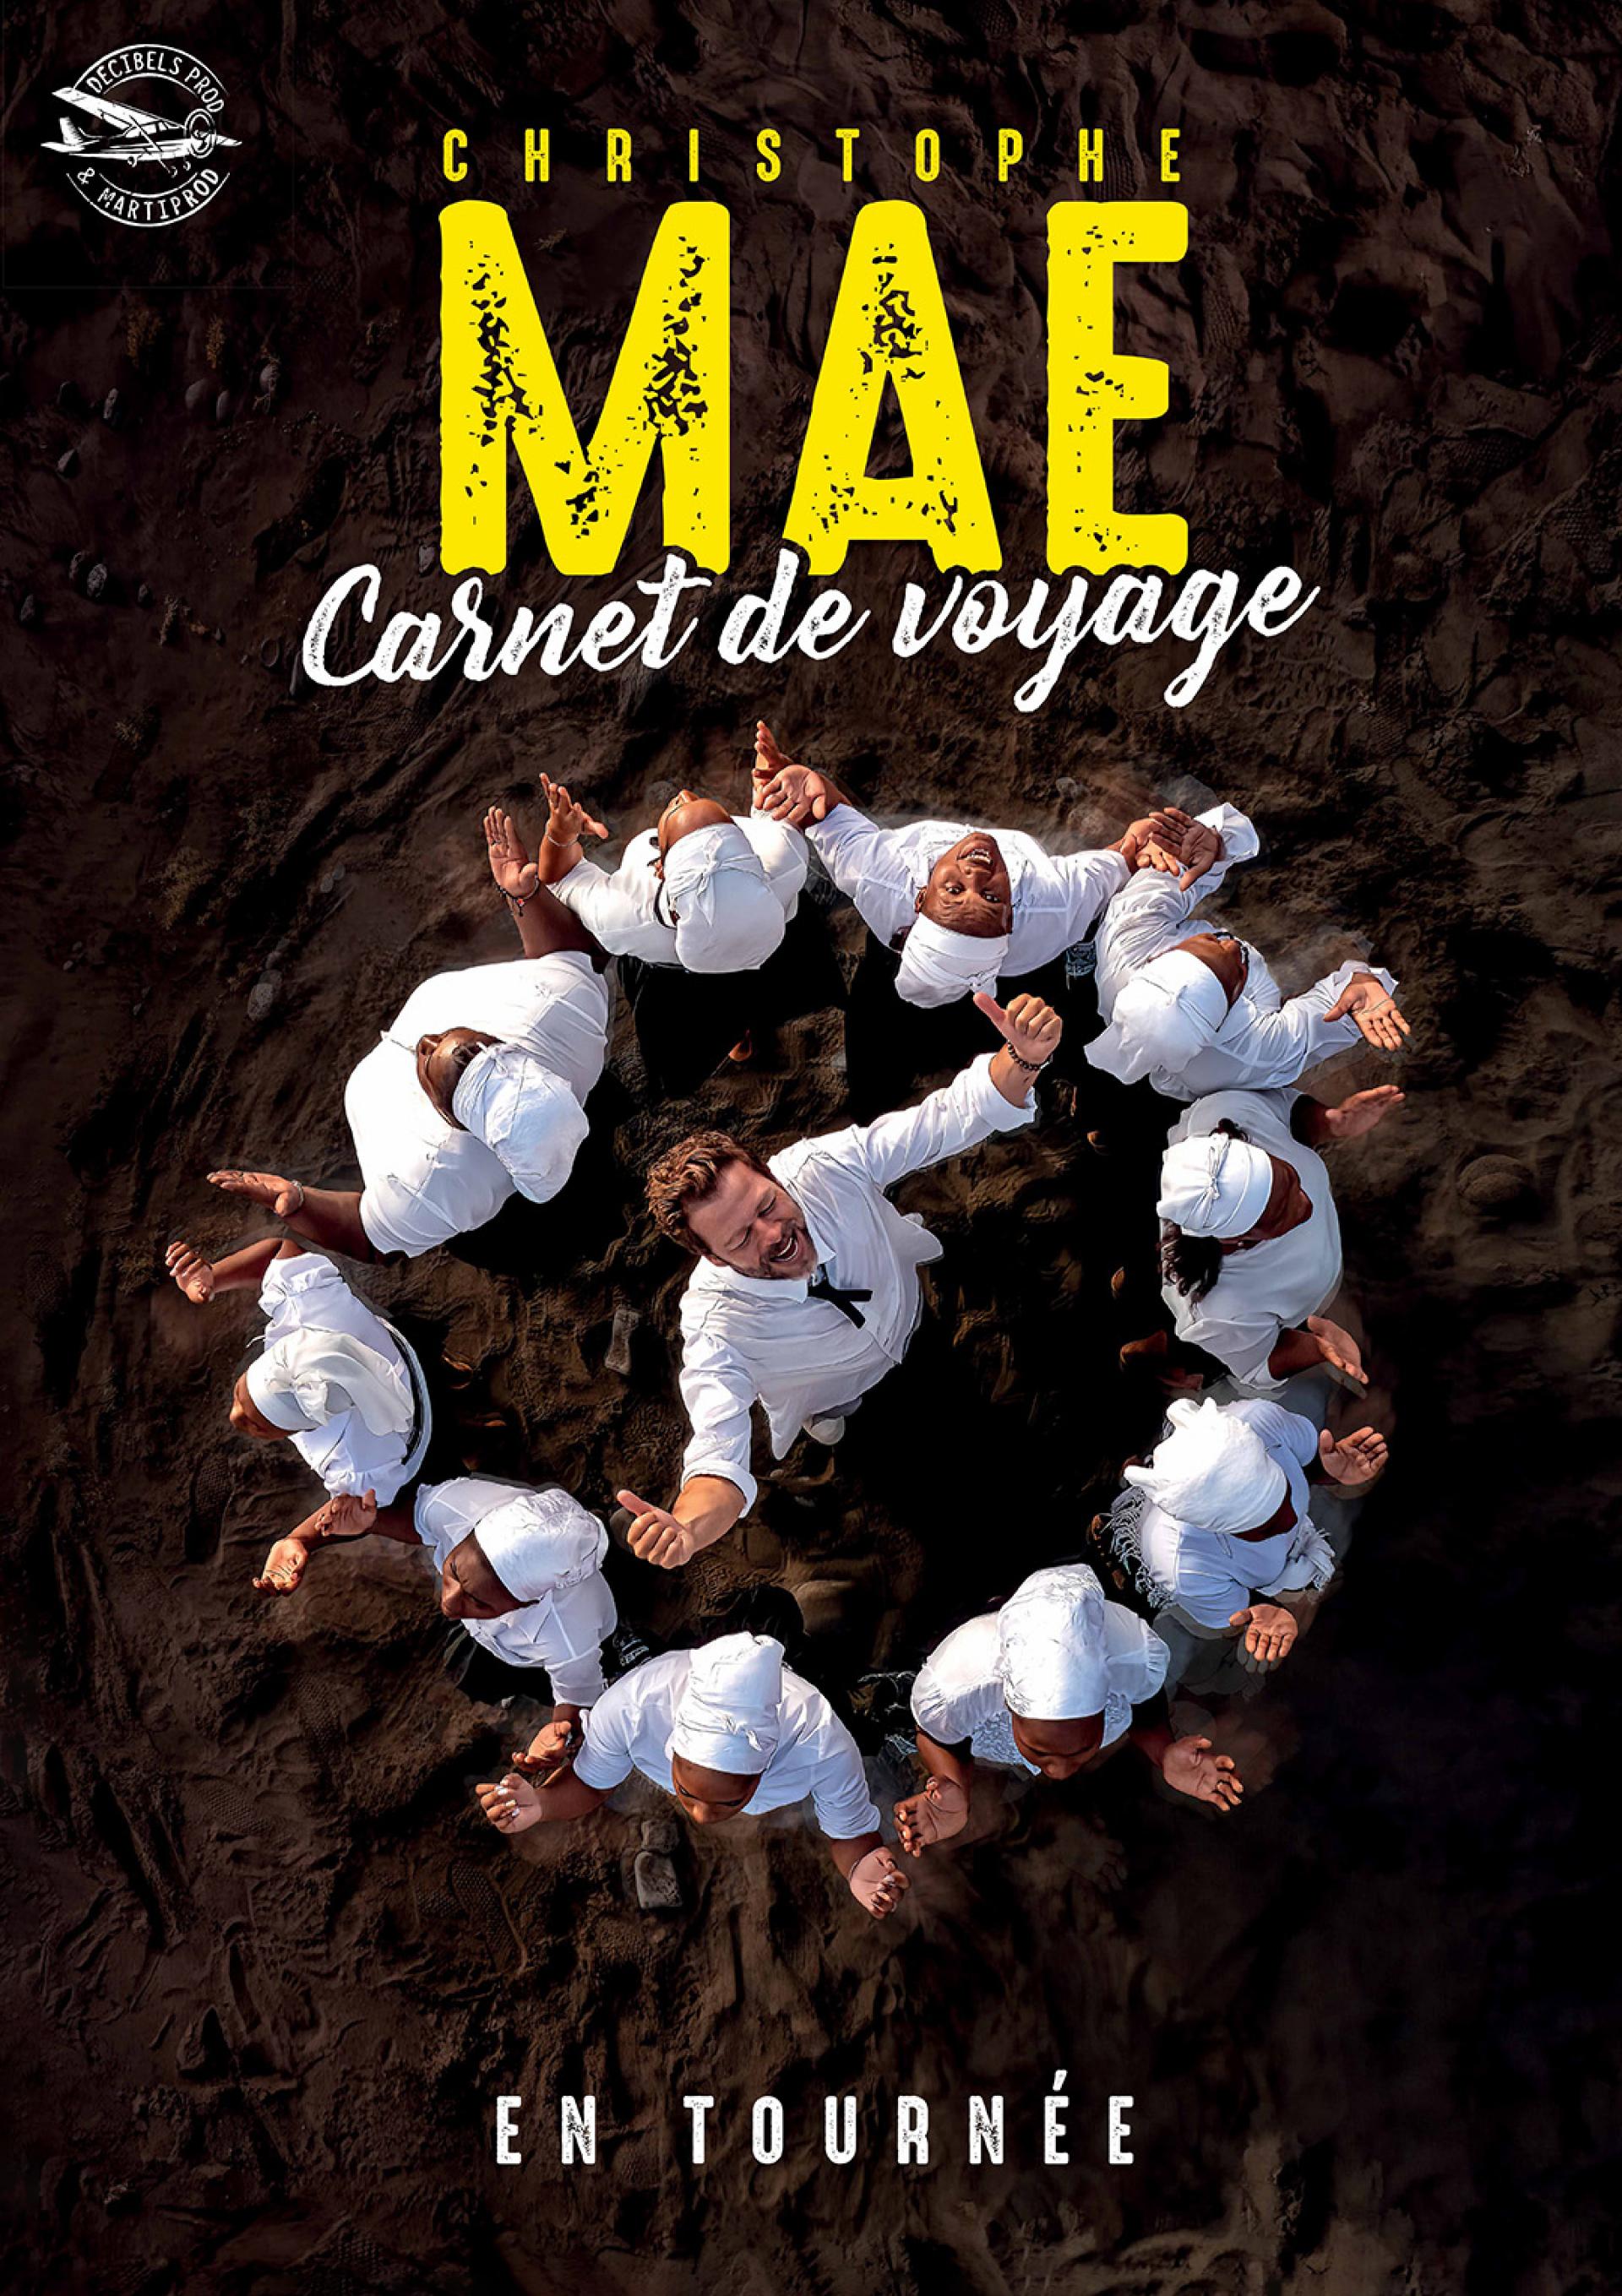 Christophe Maé - Carnet De Voyage at Theatre Capitole Quebec Tickets